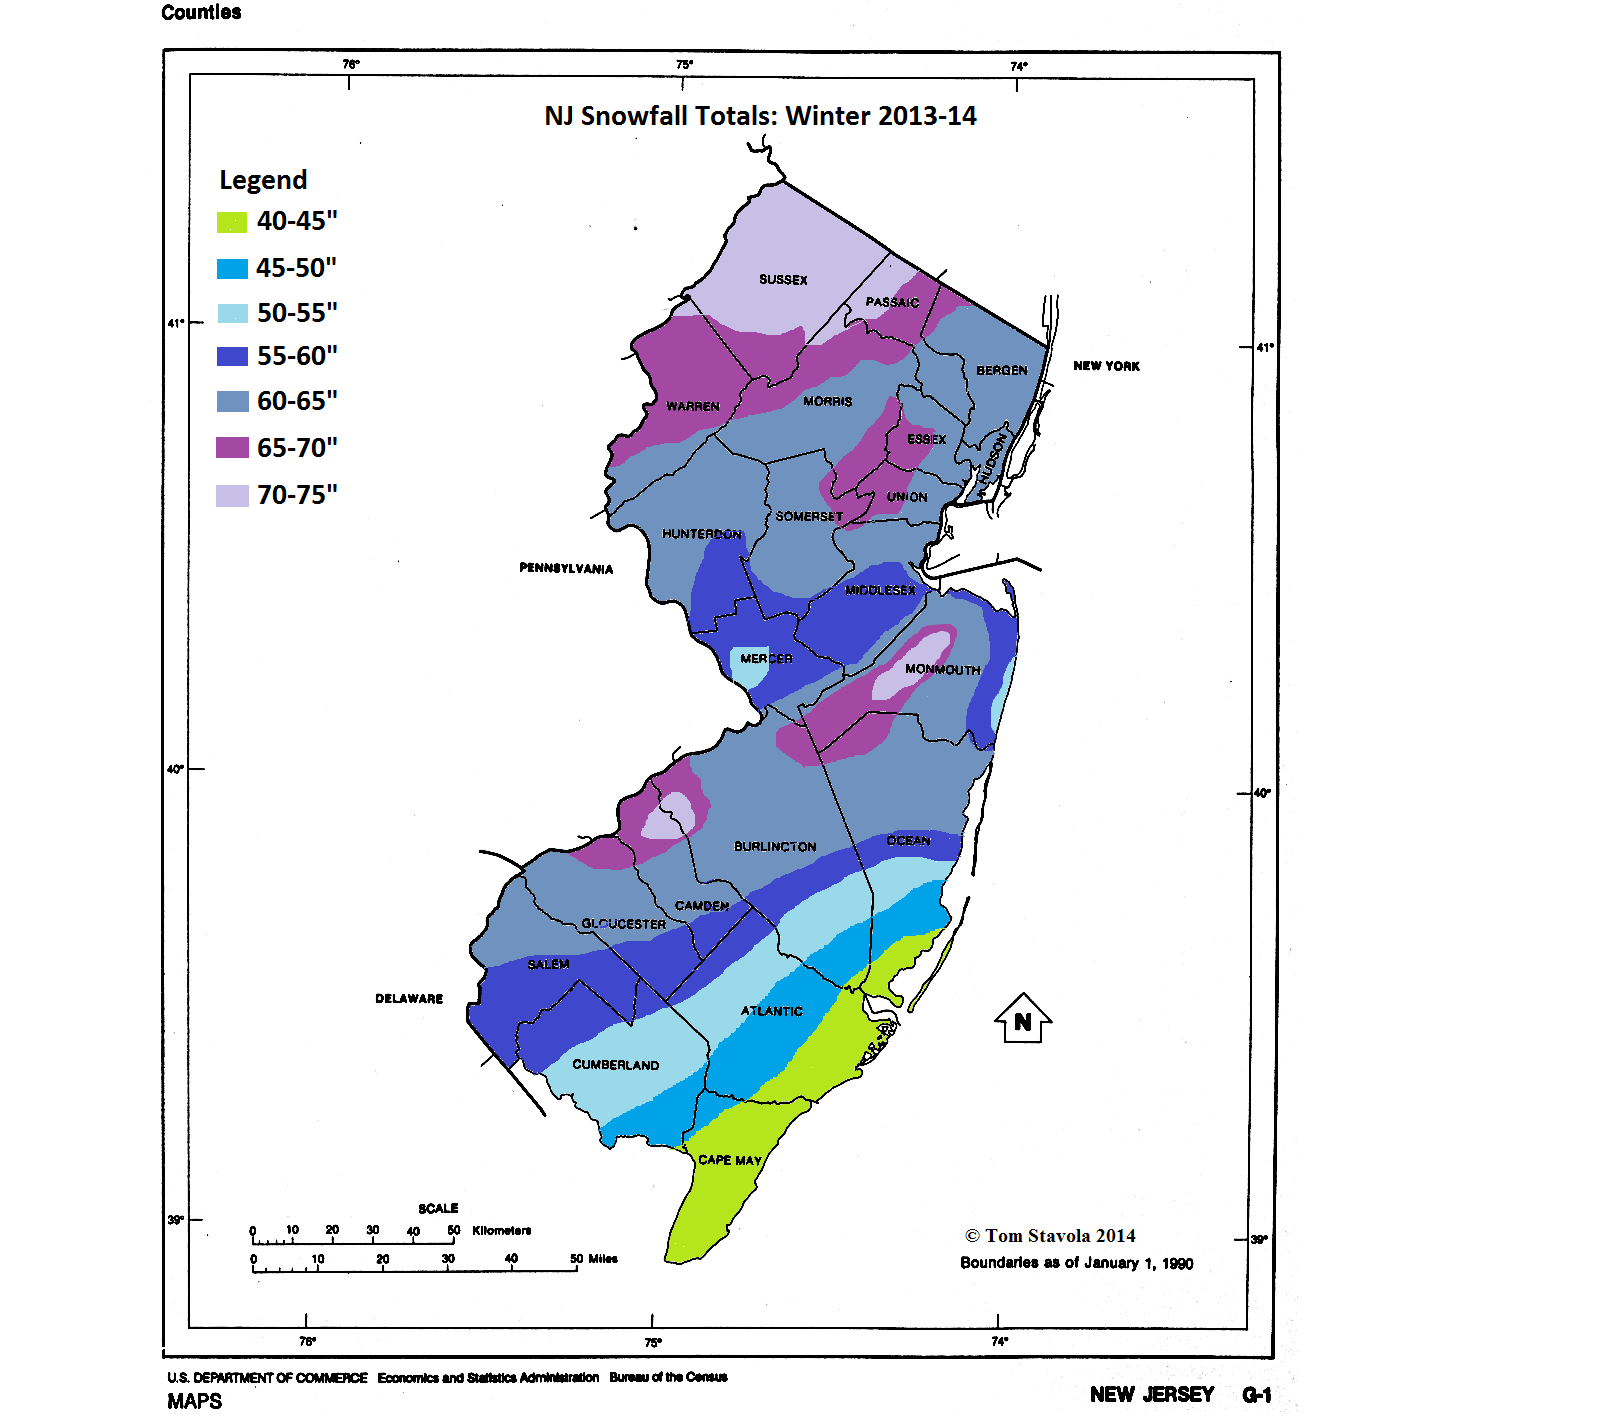 NJ-Snow-Totals-FINAL-2013-14.png